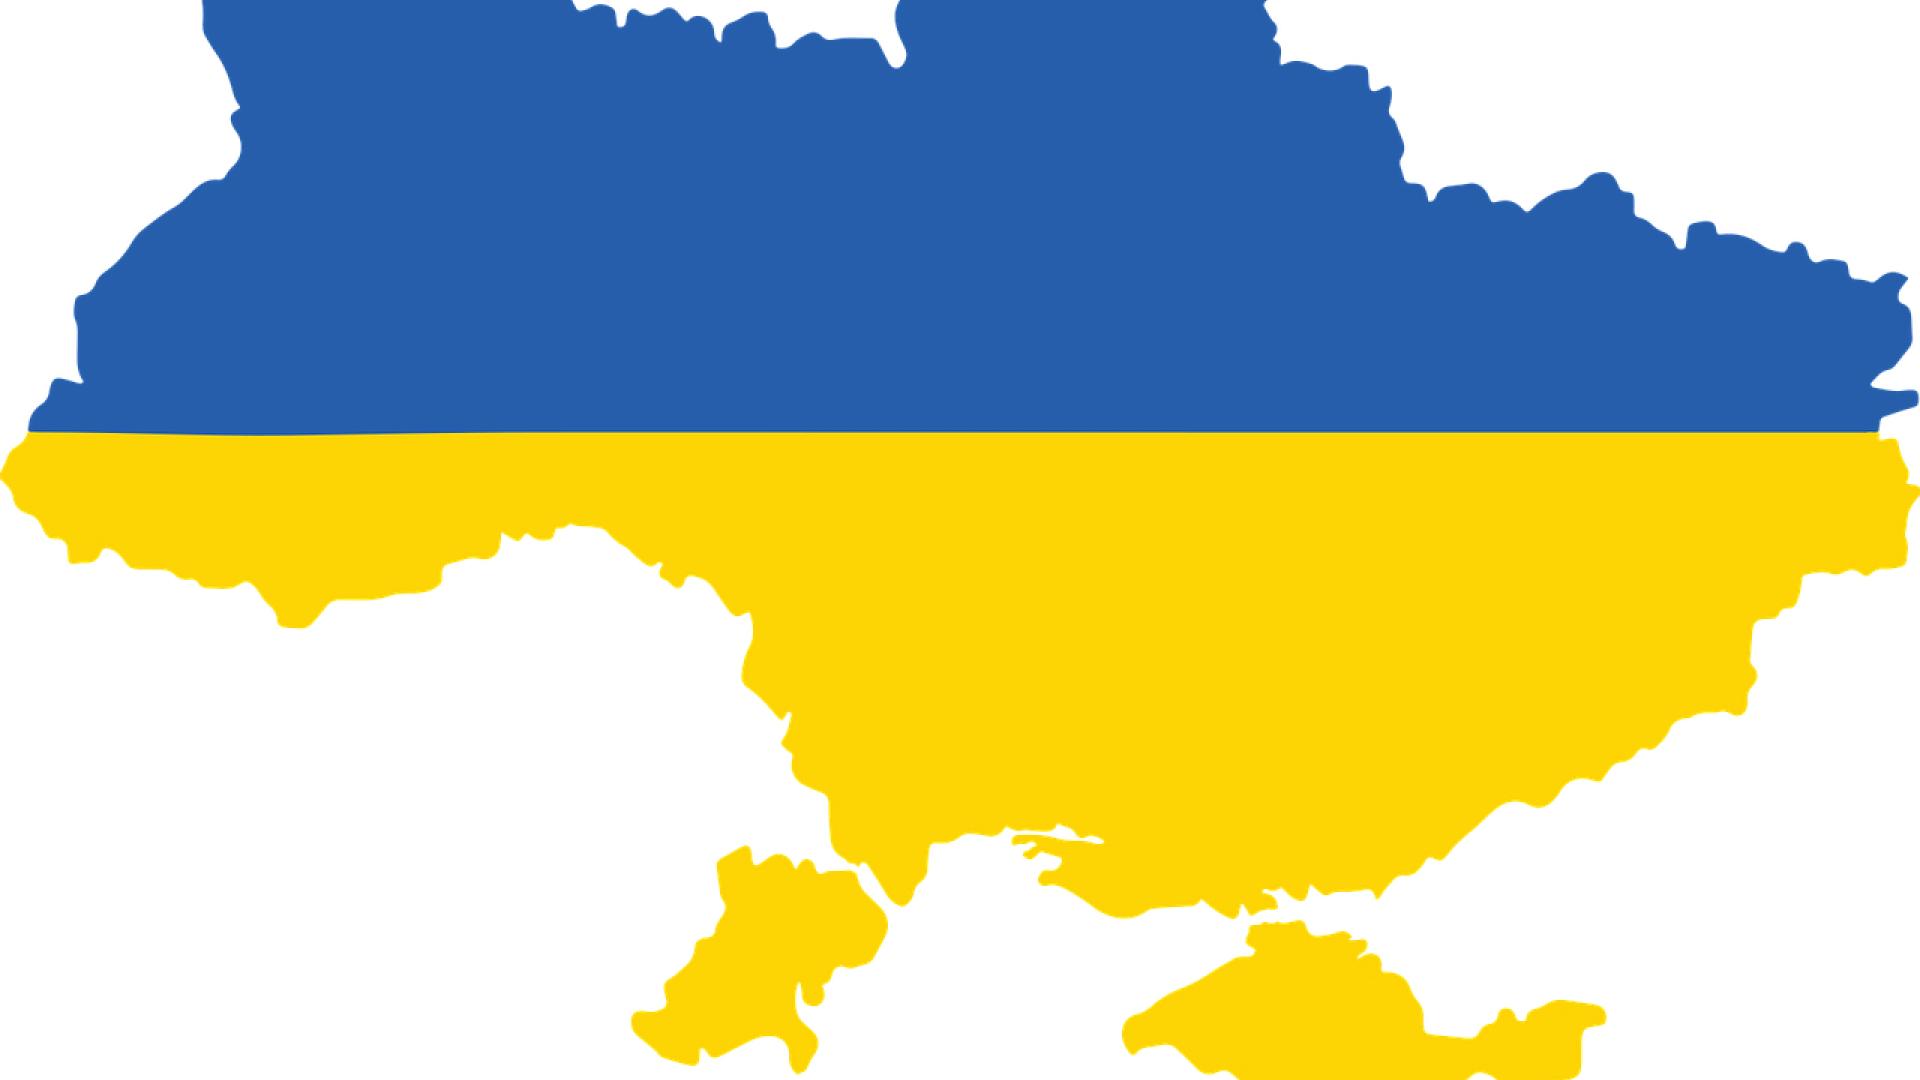 Carte du territoire de l'Ukraine